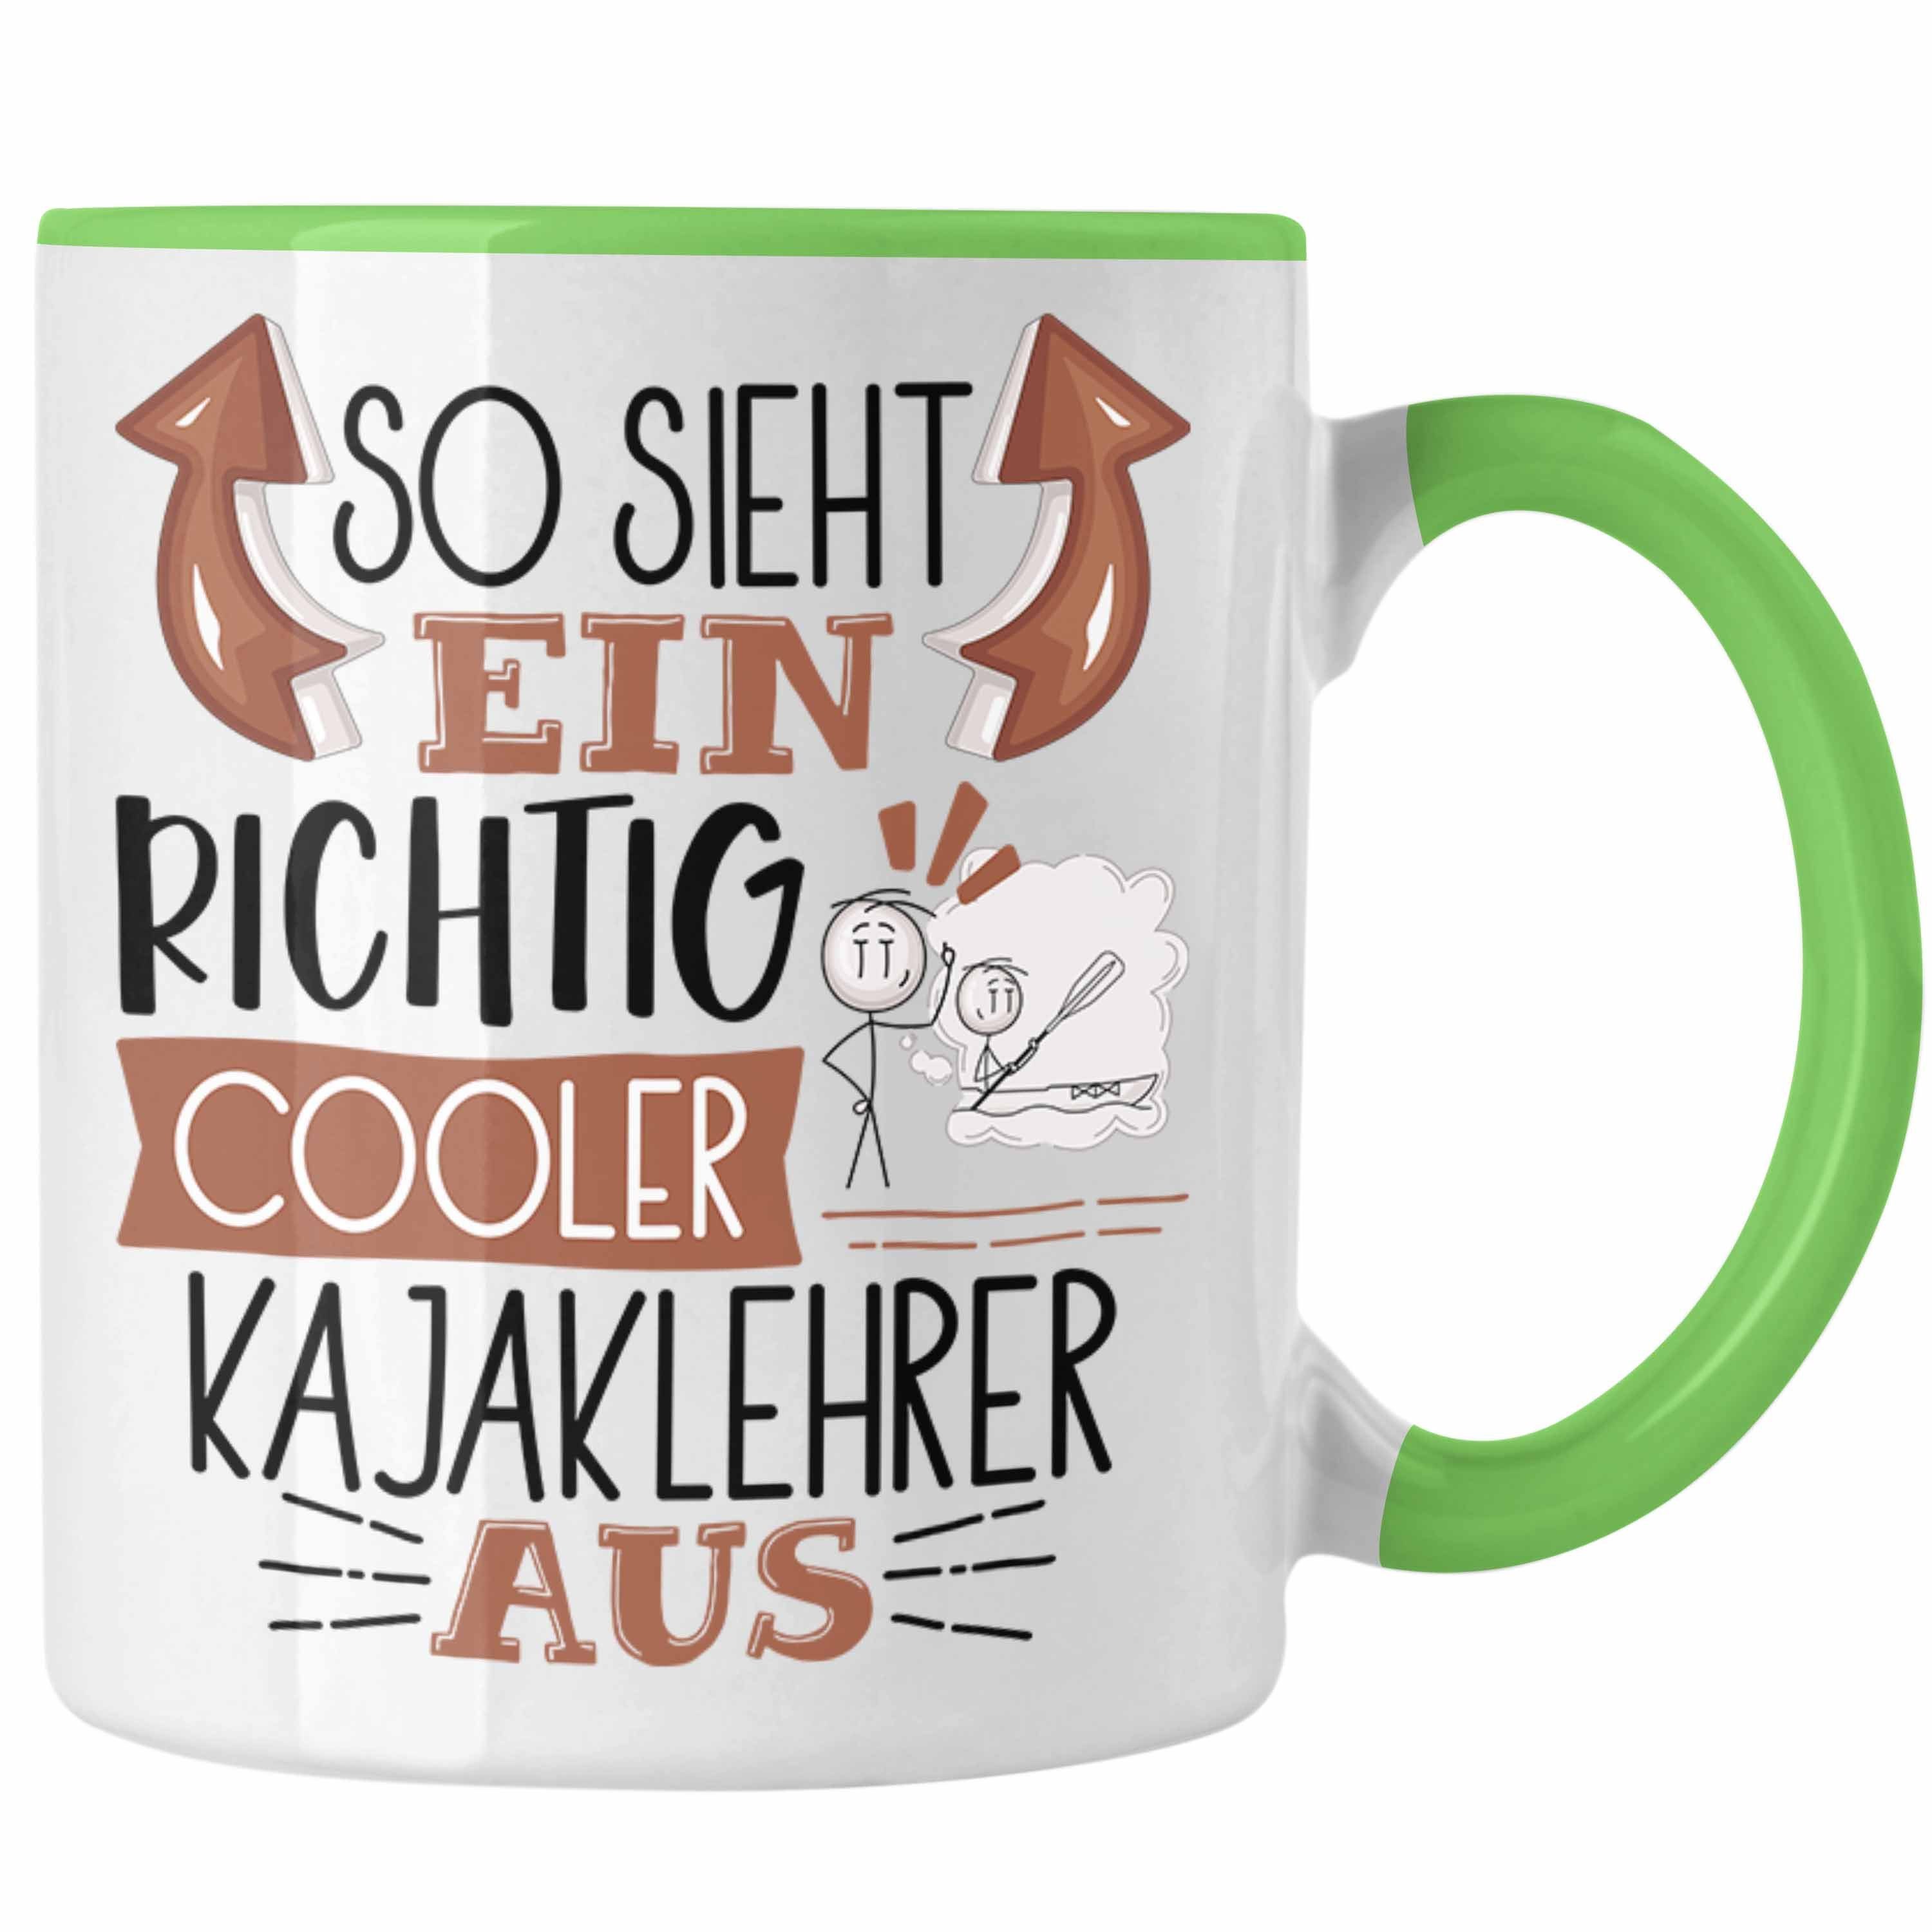 Kajakle Kajaklehrer Aus für Trendation Tasse Richtig Sieht Geschenk So Grün Ein Tasse Cooler